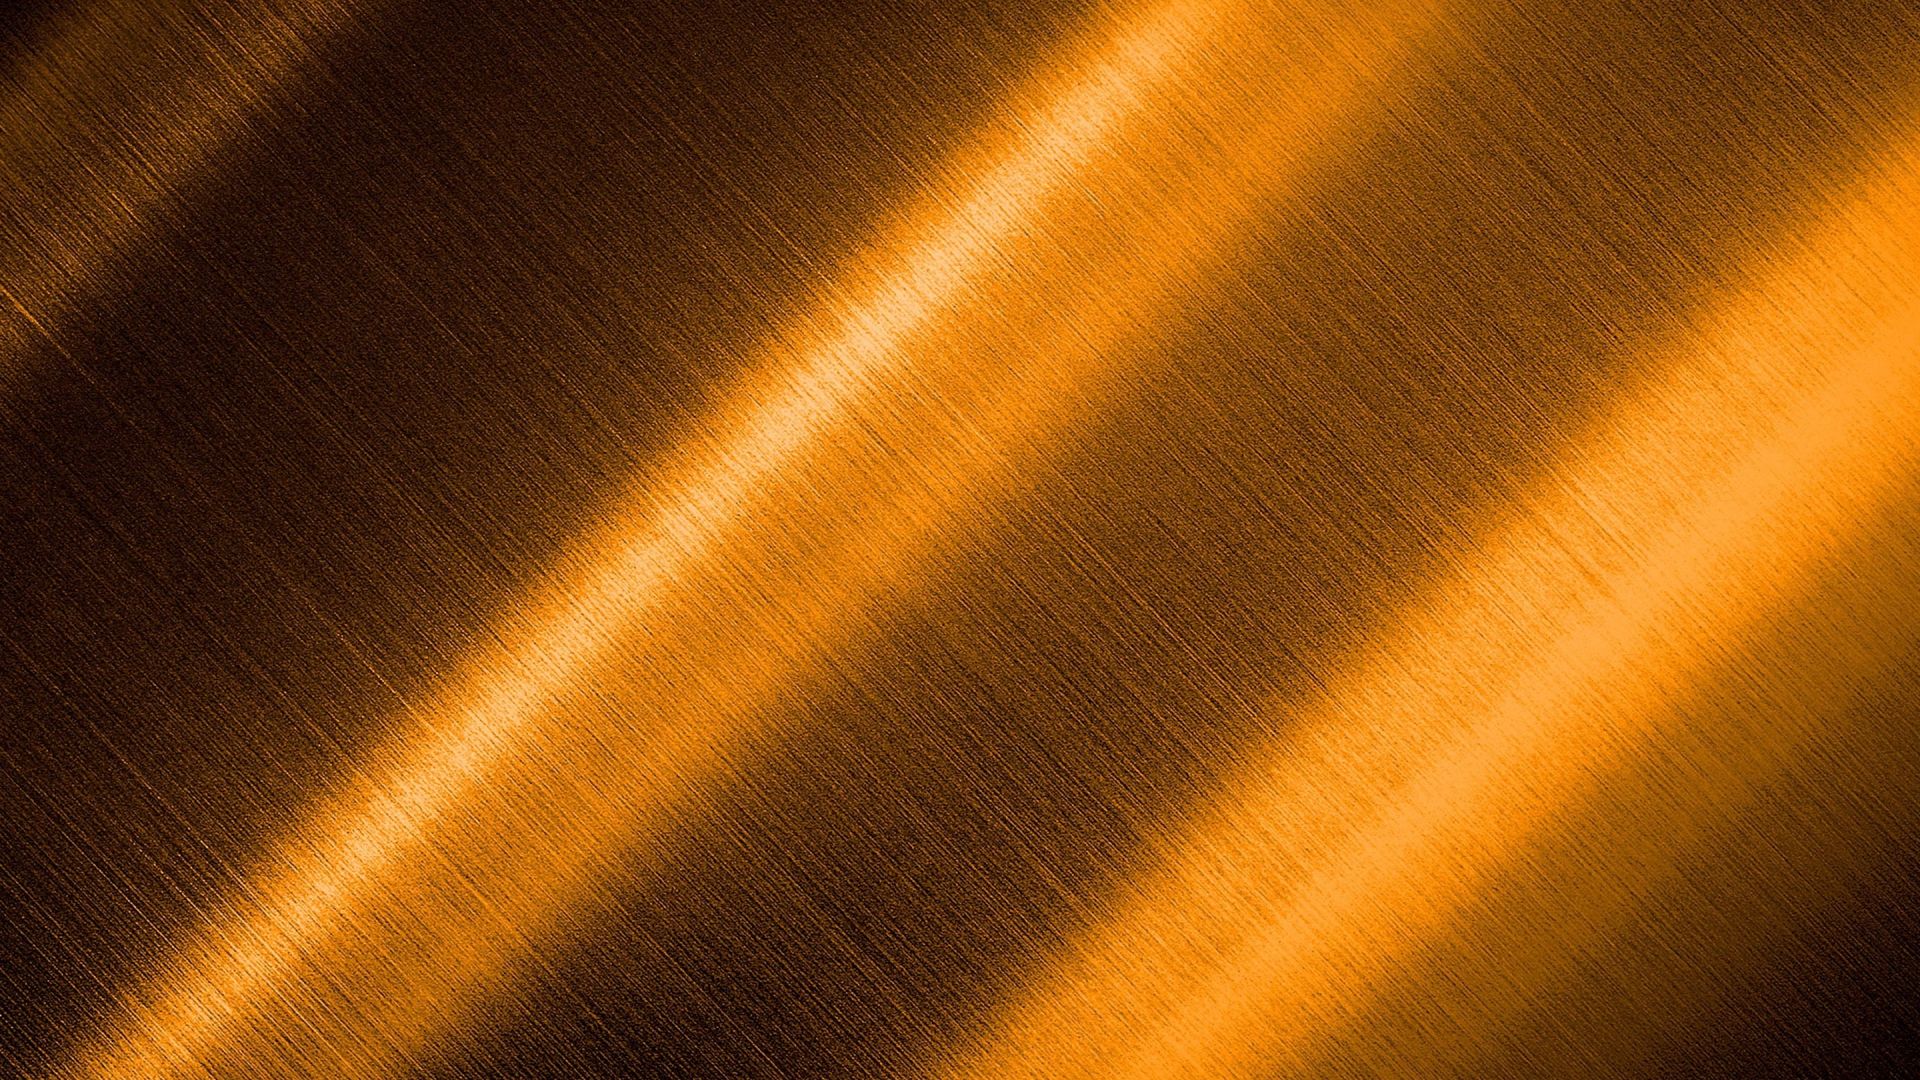 Wallpaper Golden shining texture, surface